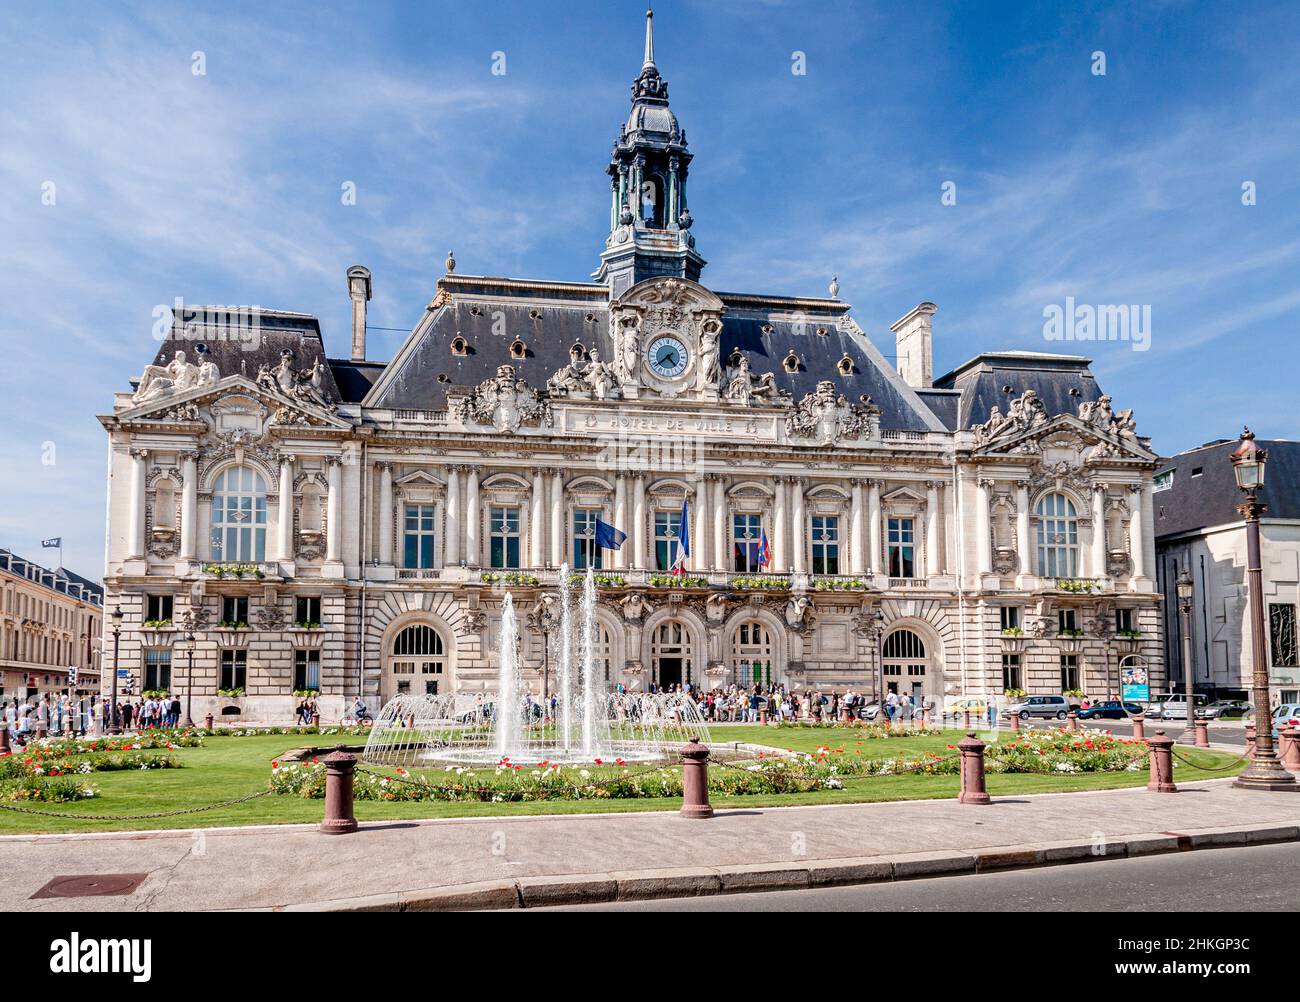 Hôtel de ville, Tours, France Banque D'Images